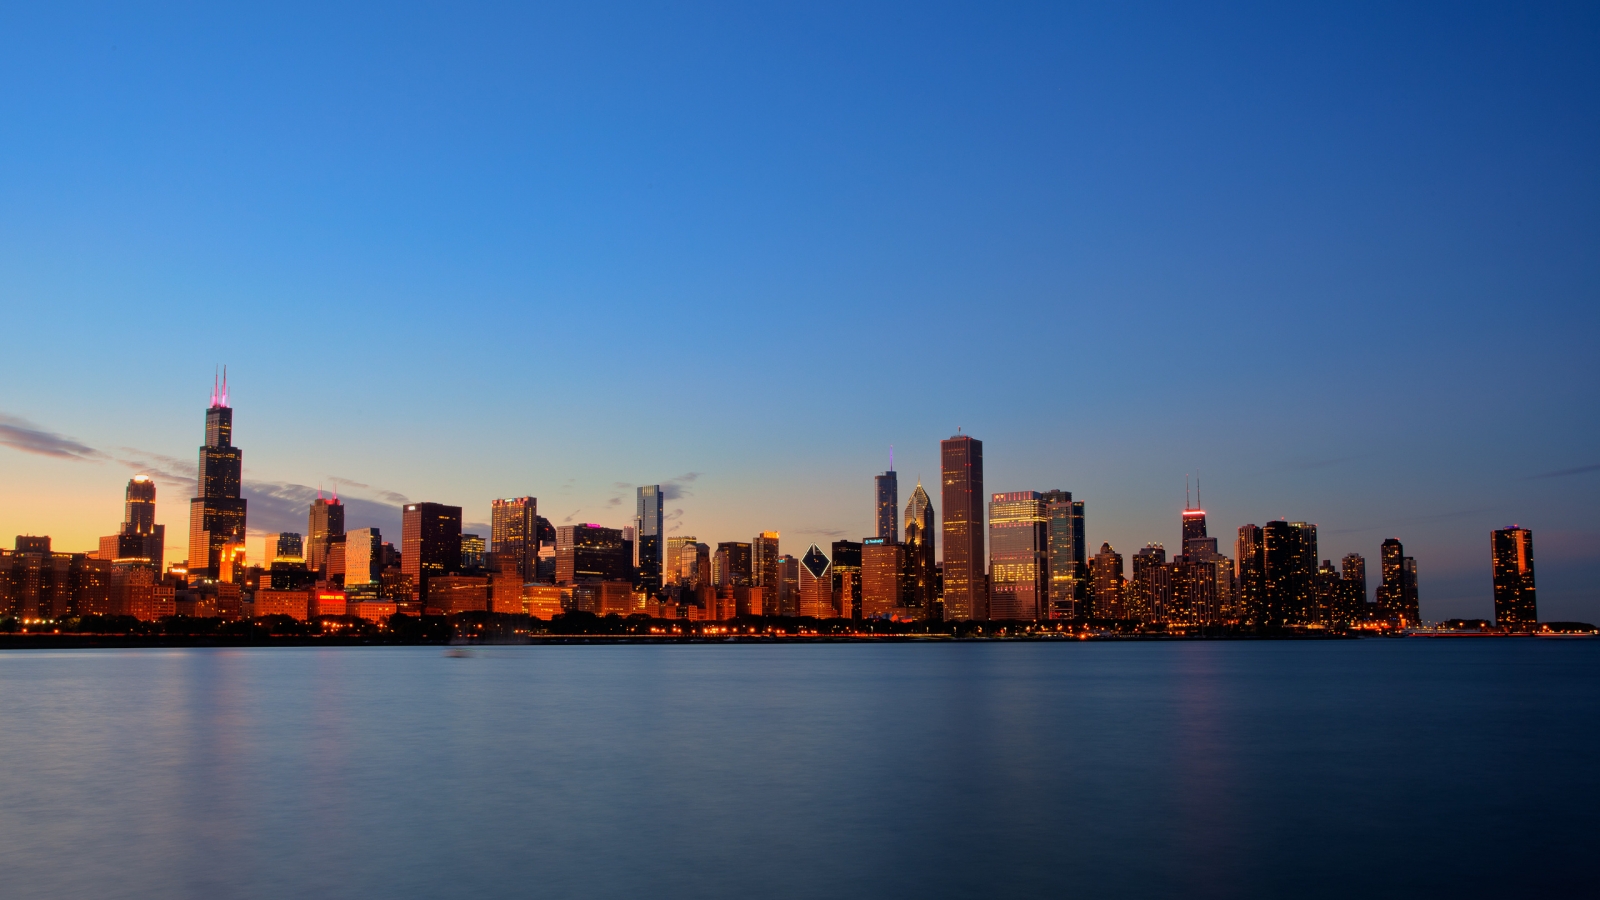 Chicago Skyline for 1600 x 900 HDTV resolution